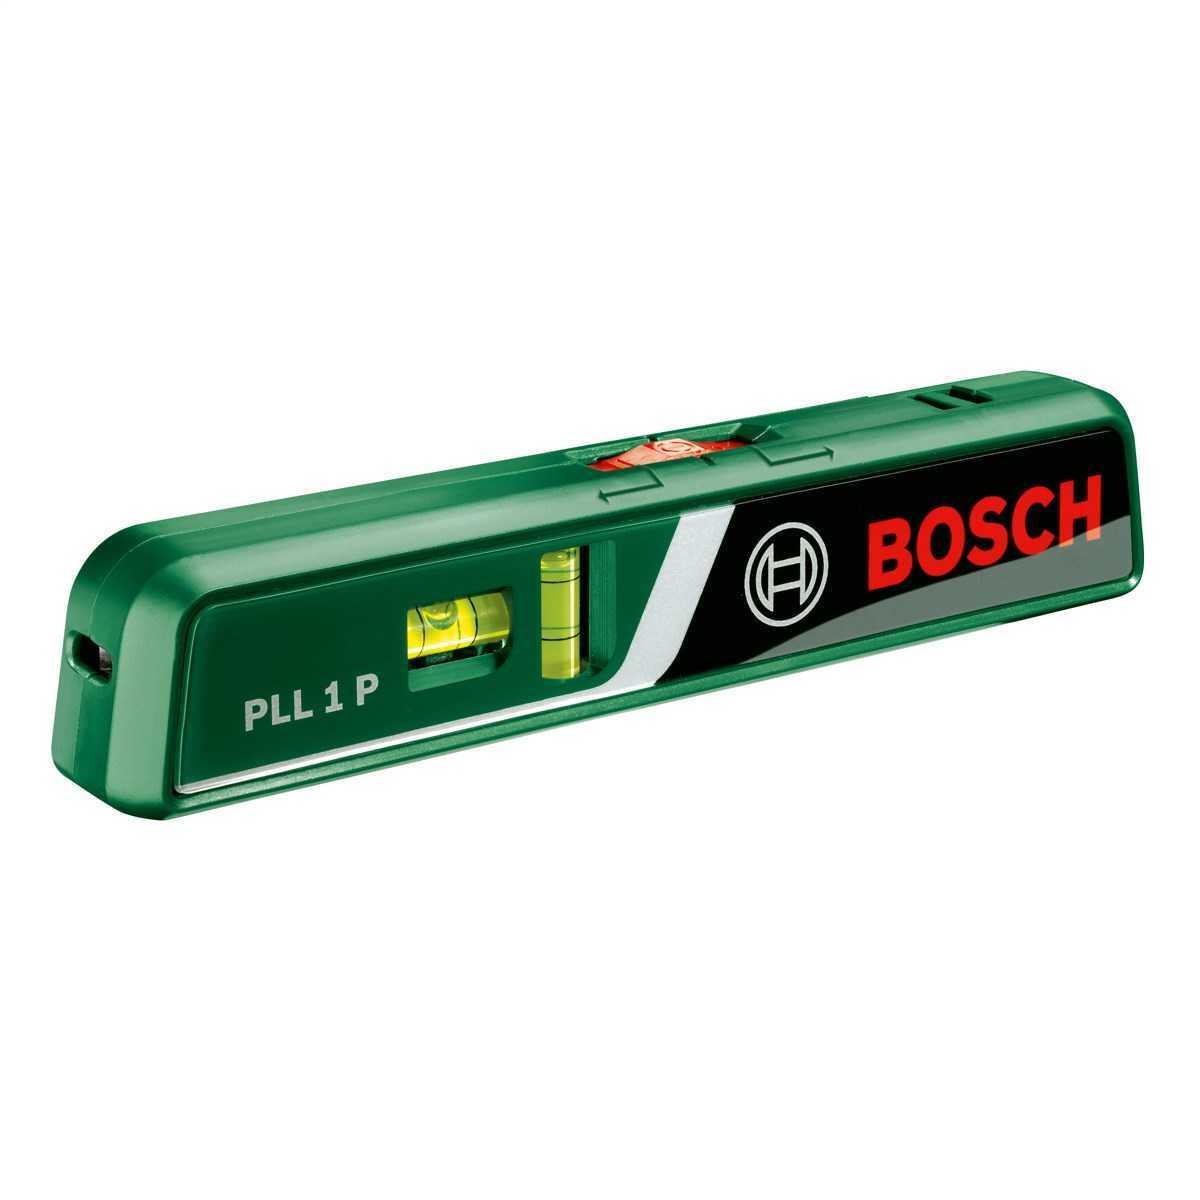 Bosch PLL 1 P Lazerli Su Terazisi (0603663300)